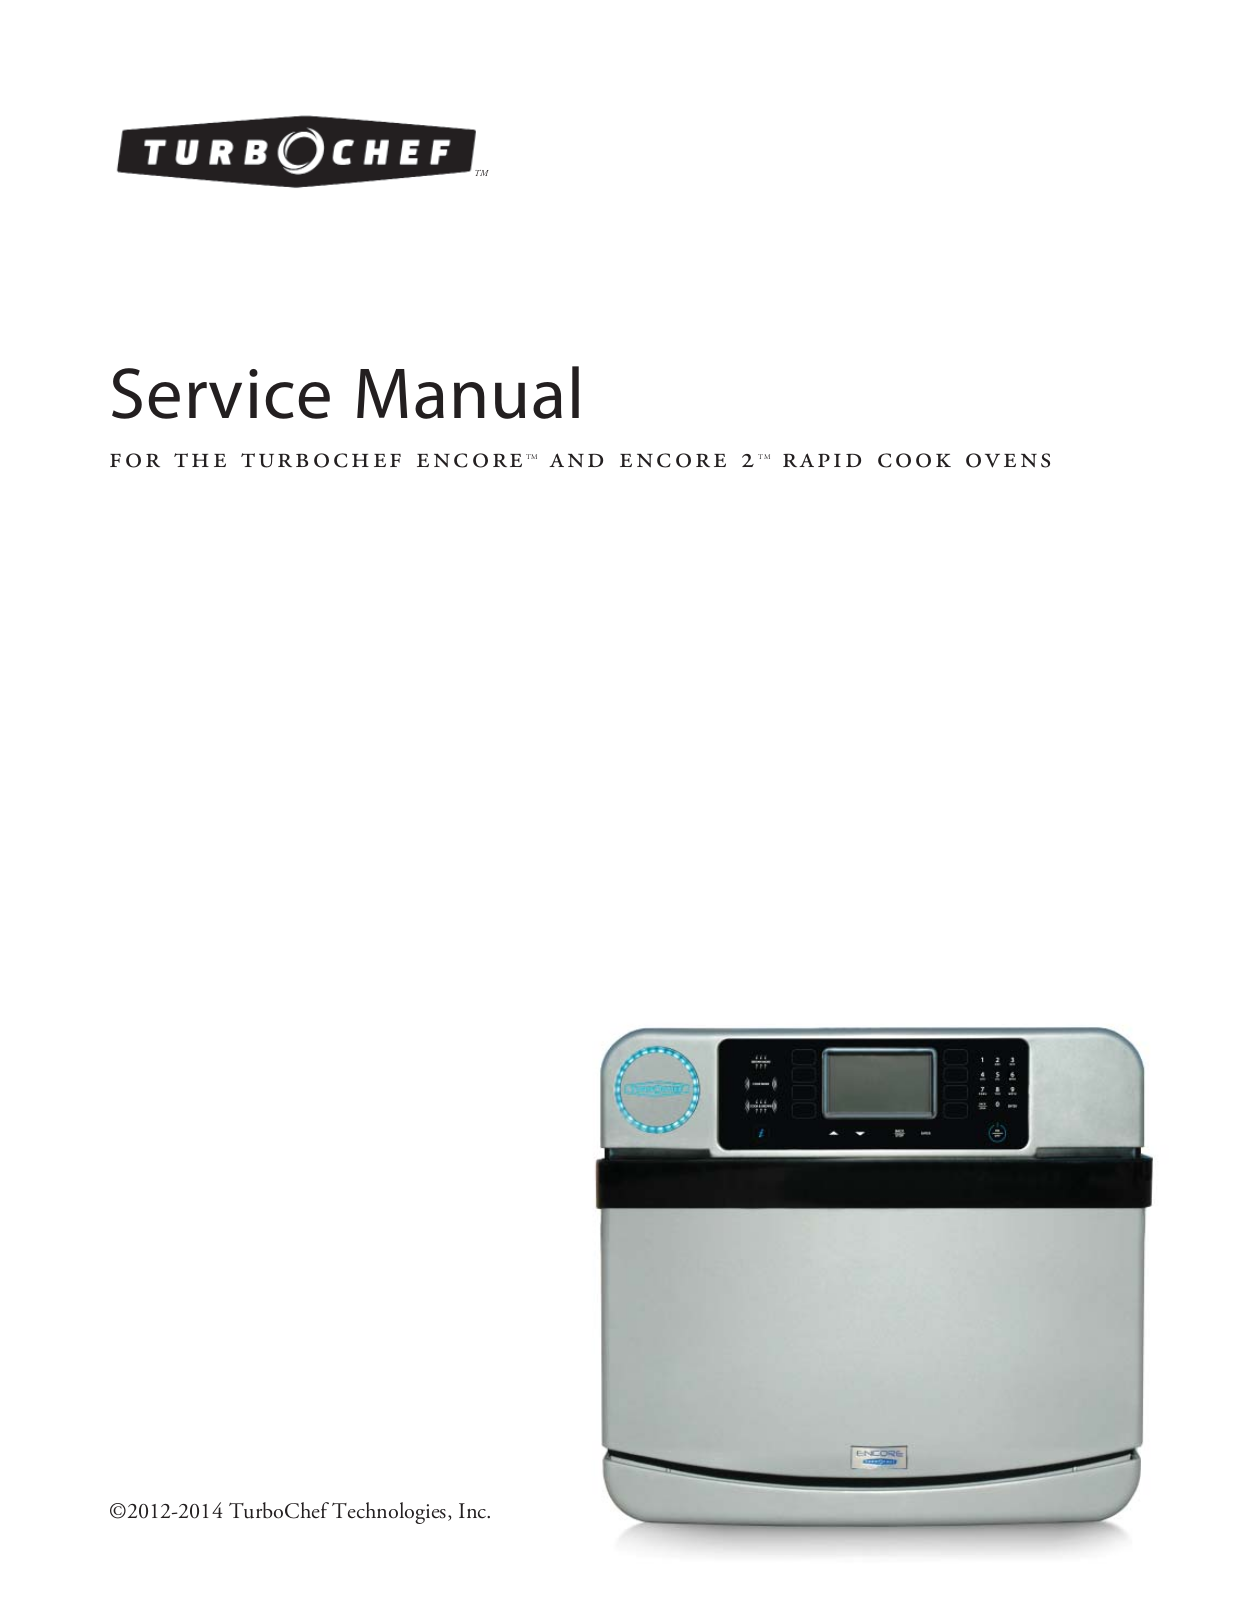 TurboChef ENCORE 2 Service Manual